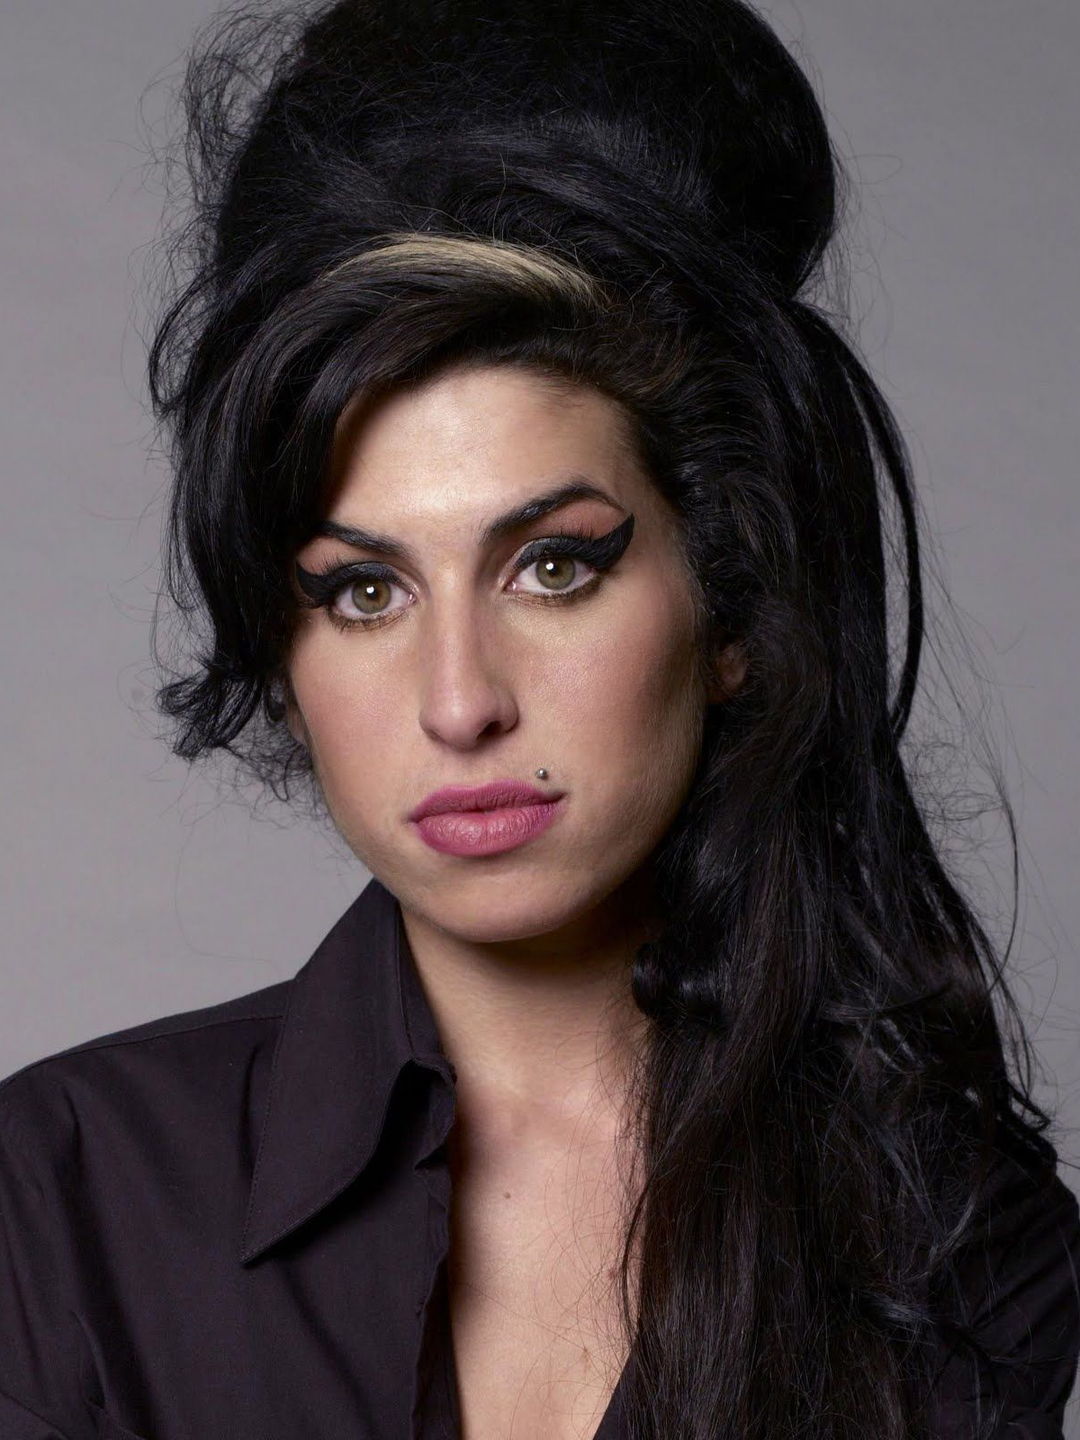 Amy Winehouse upbringing